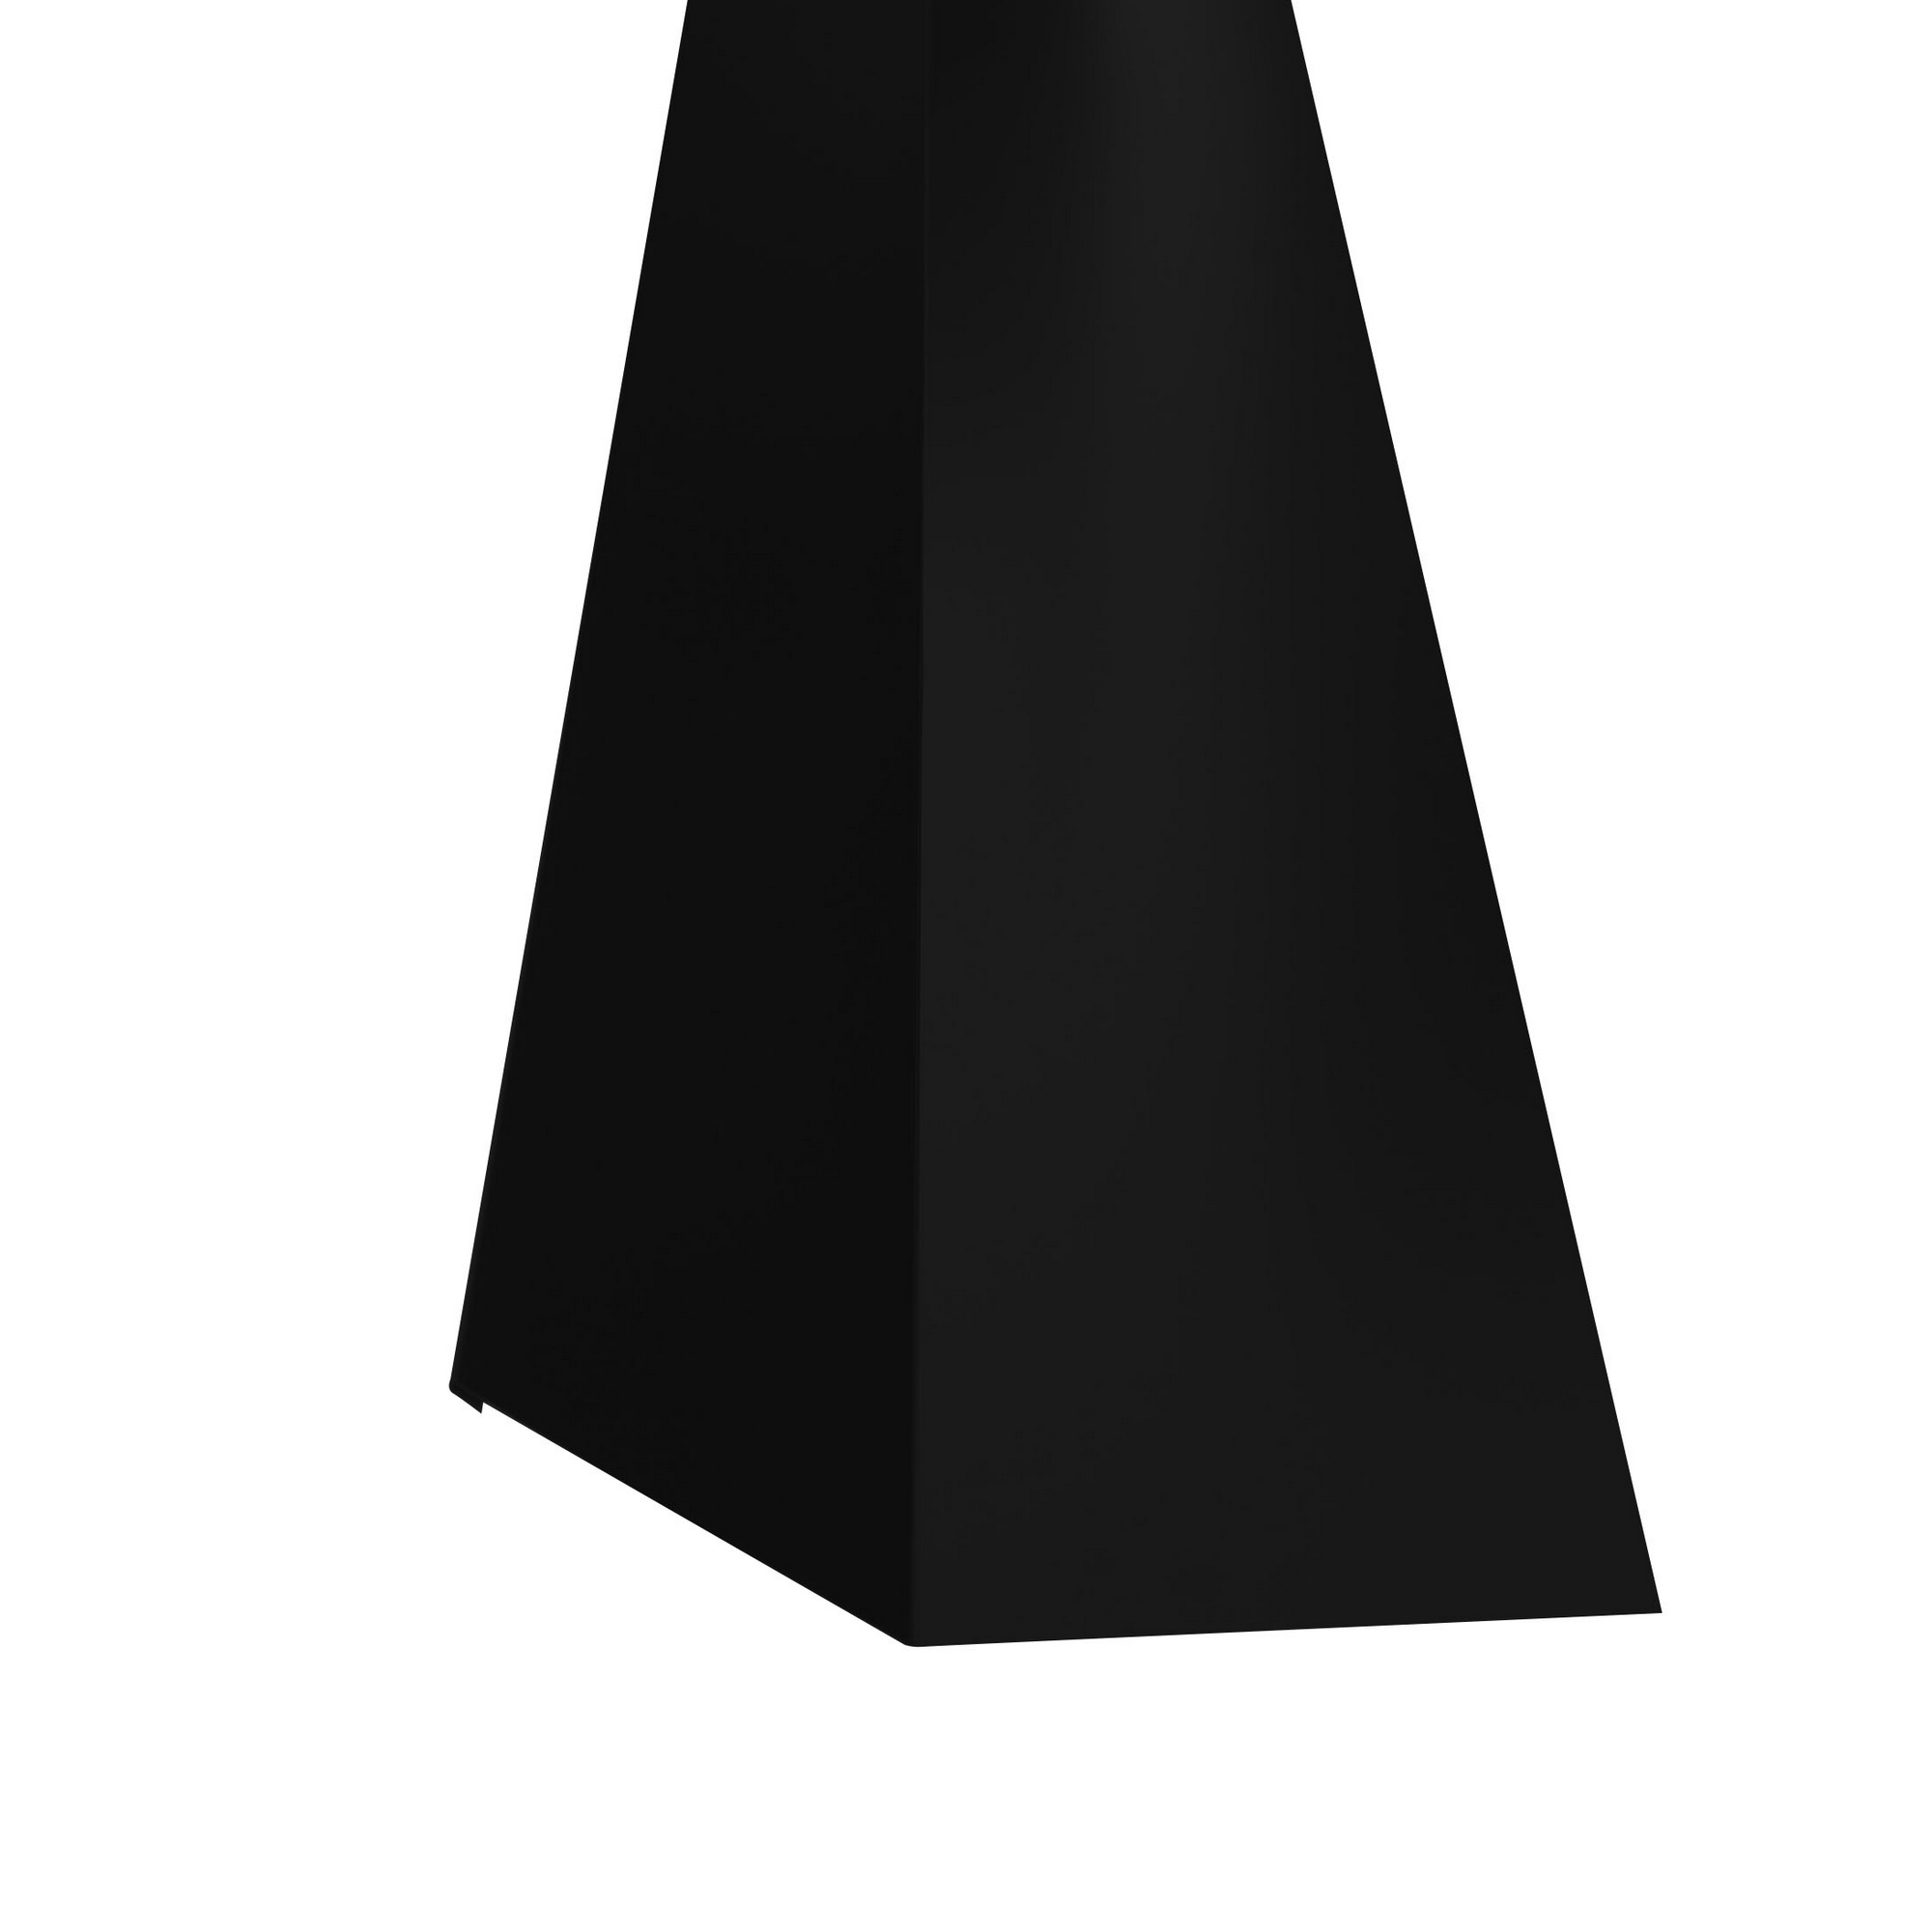 Schürze für Mansarden innen schwarz verzinkt 100 x 20,8 x 0,04 cm + product picture